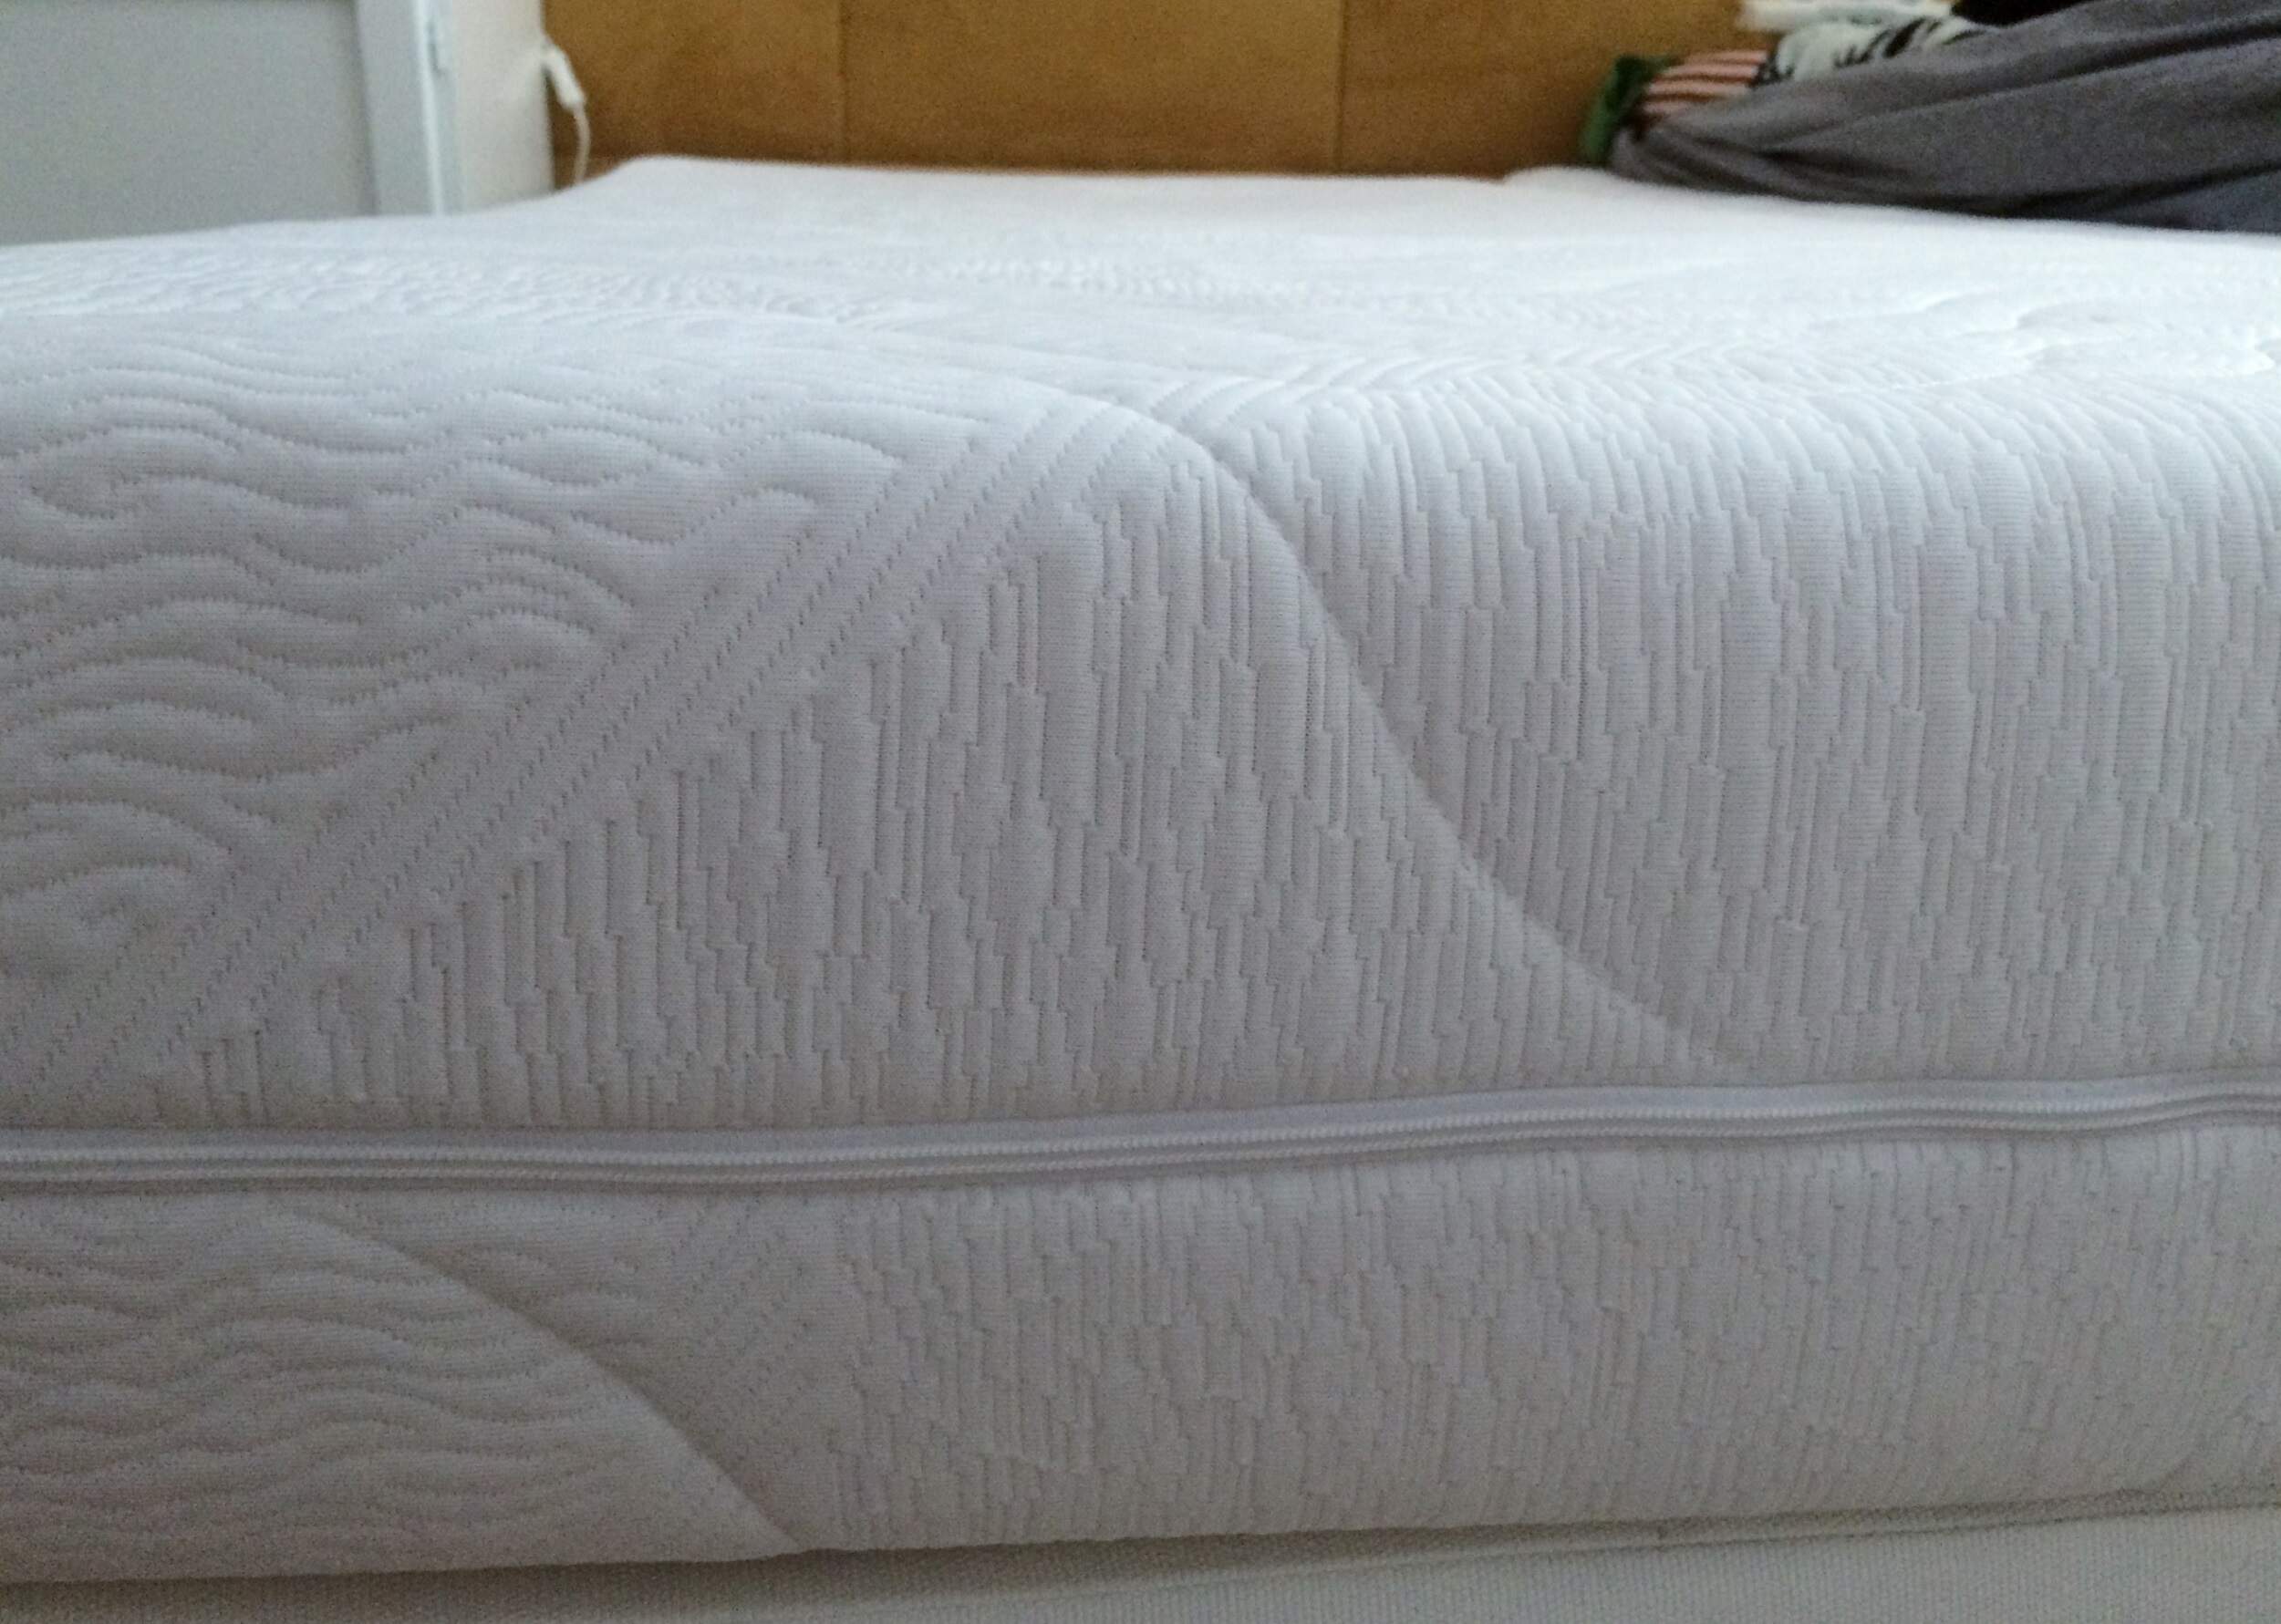 Saffie Saffier mattress detail 2.JPG